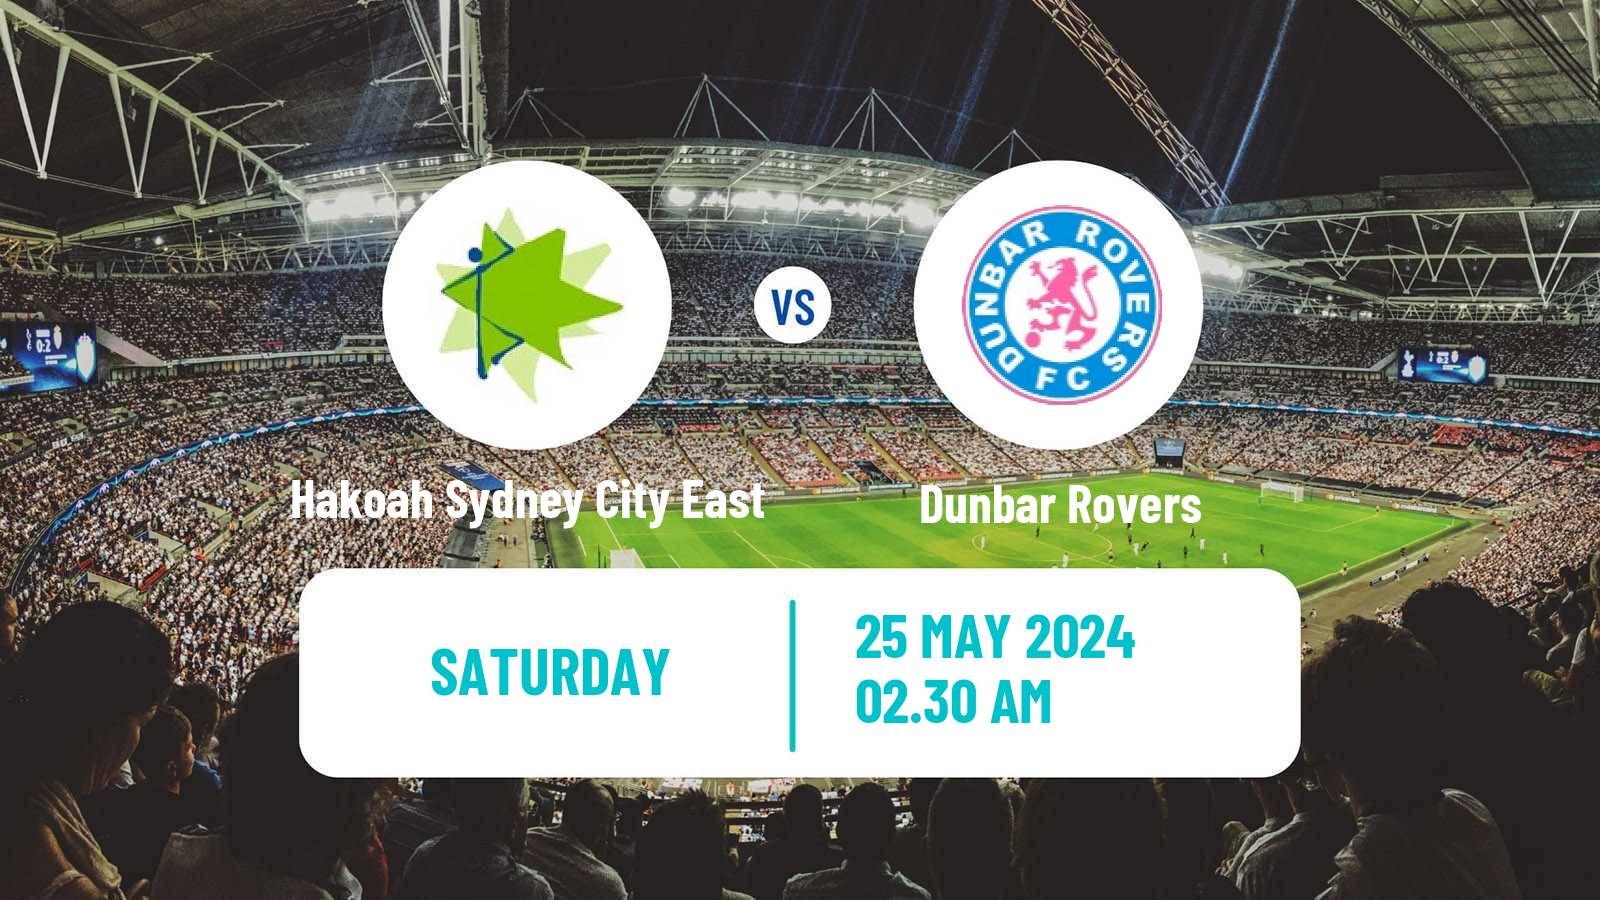 Soccer Australian NSW League One Hakoah Sydney City East - Dunbar Rovers